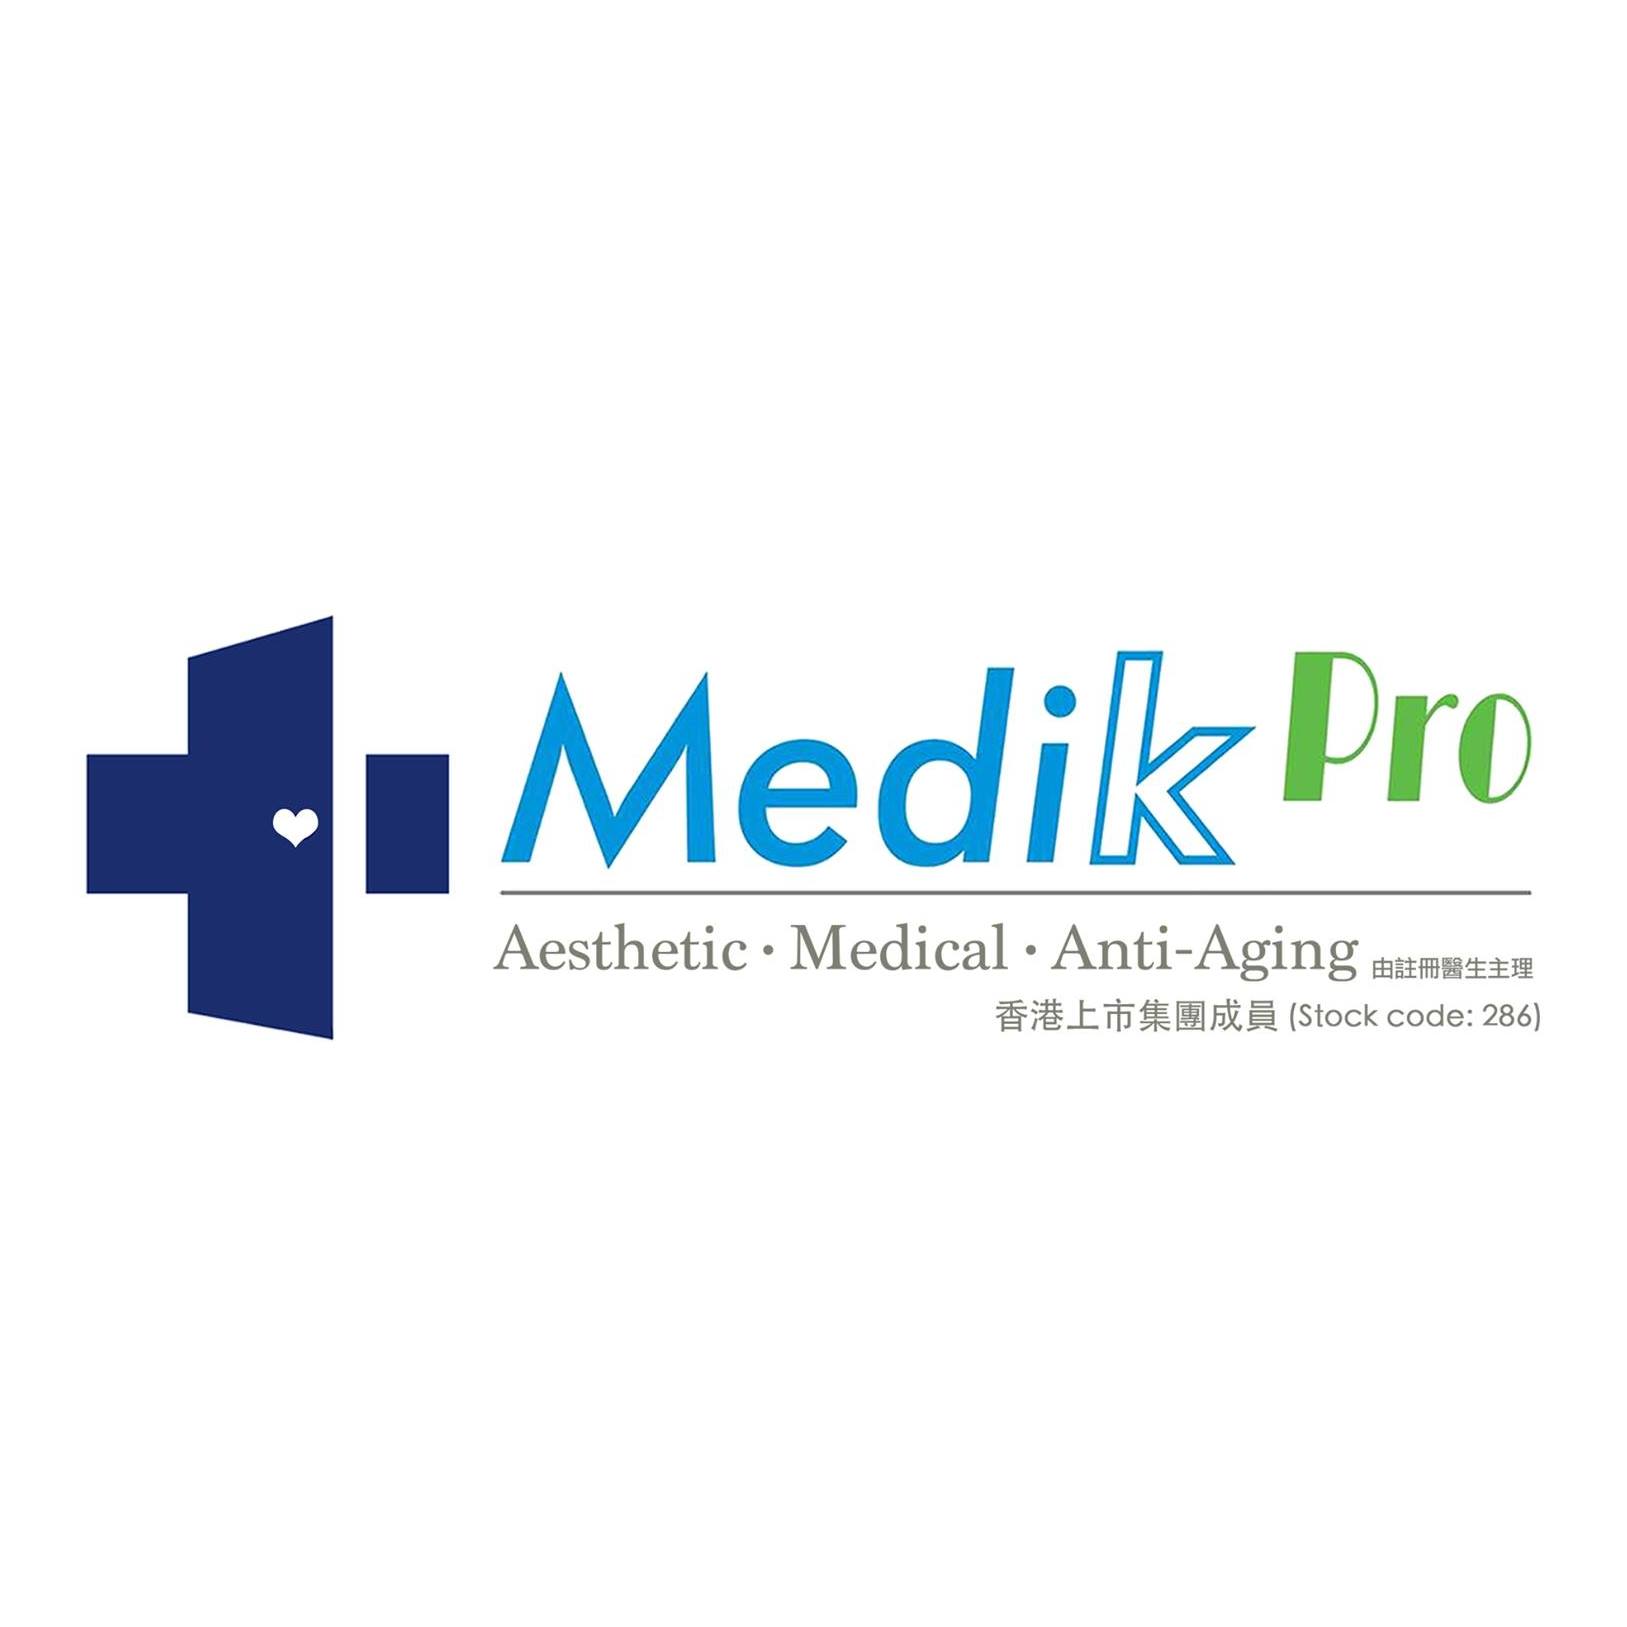 光學美容: Medik Pro (旺角分店)